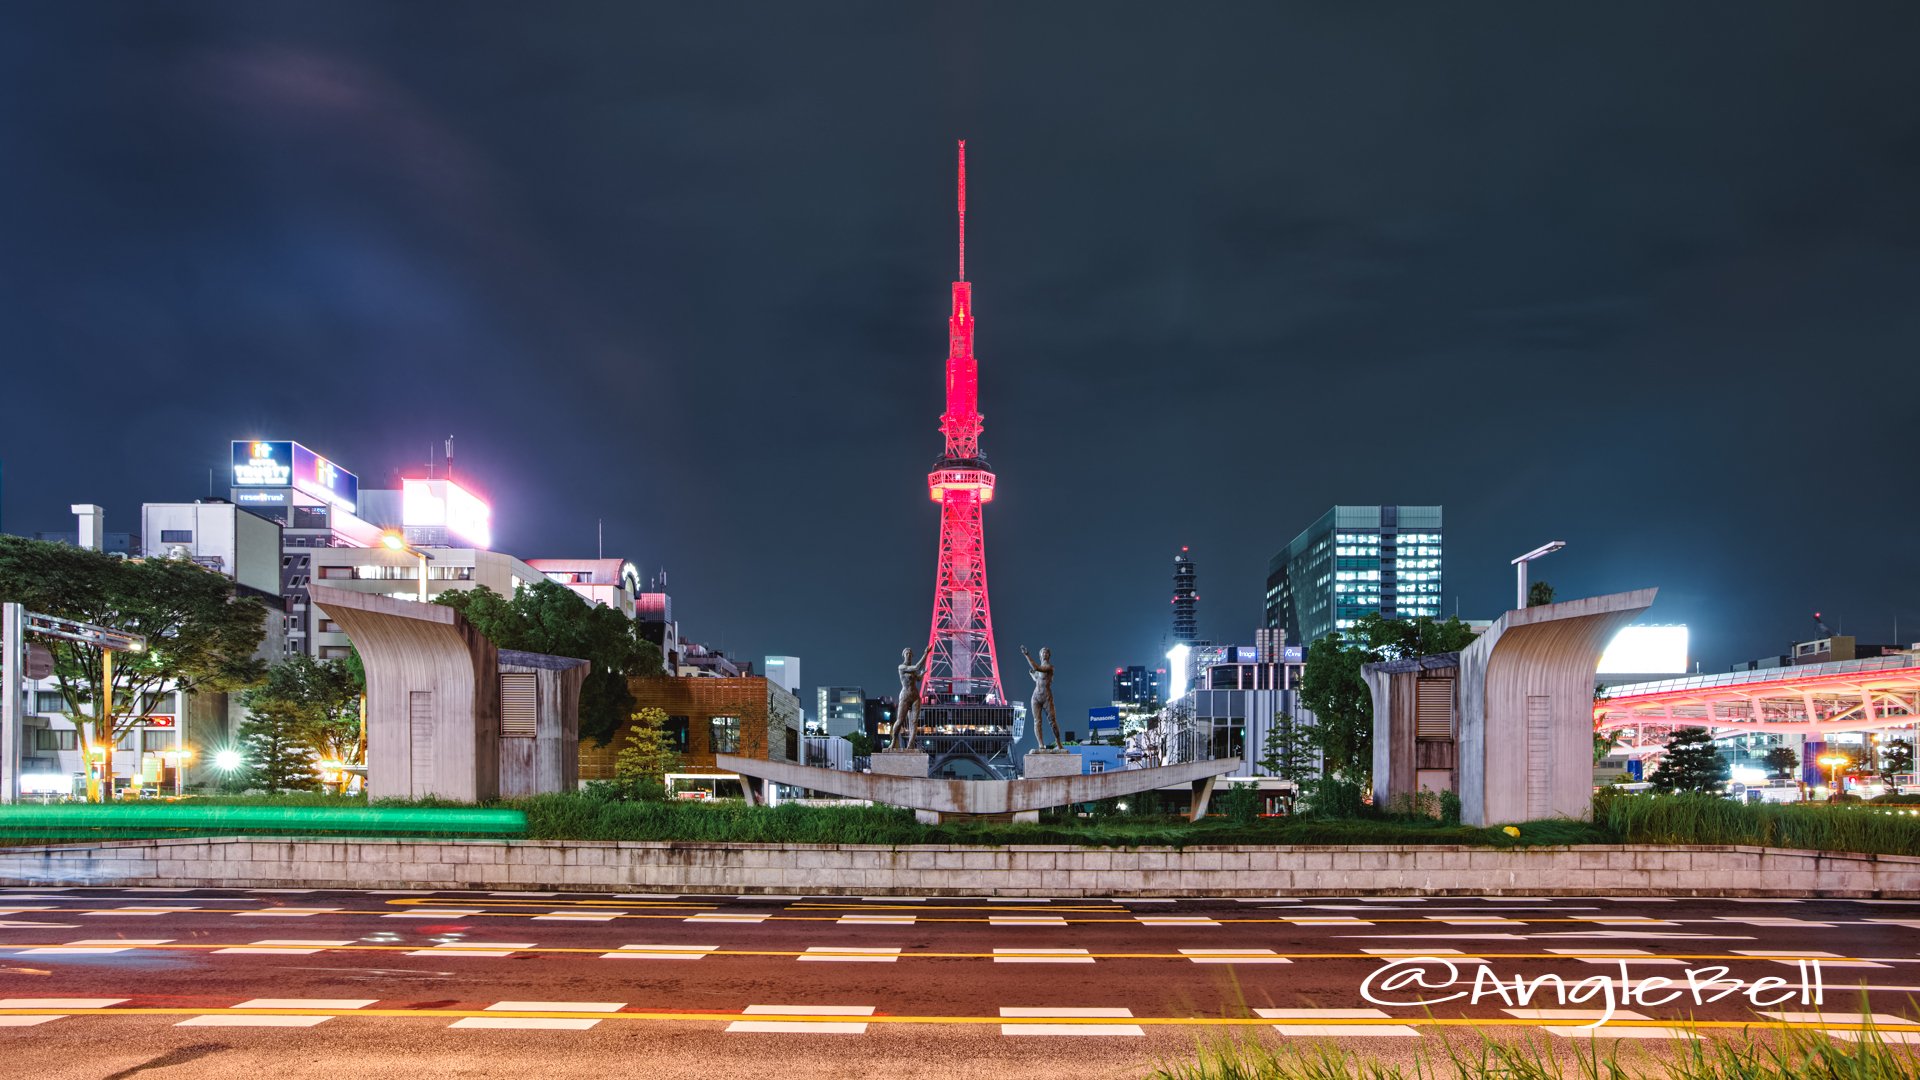 名古屋テレビ塔 (レッドライトアップ)と双身像 August 2020